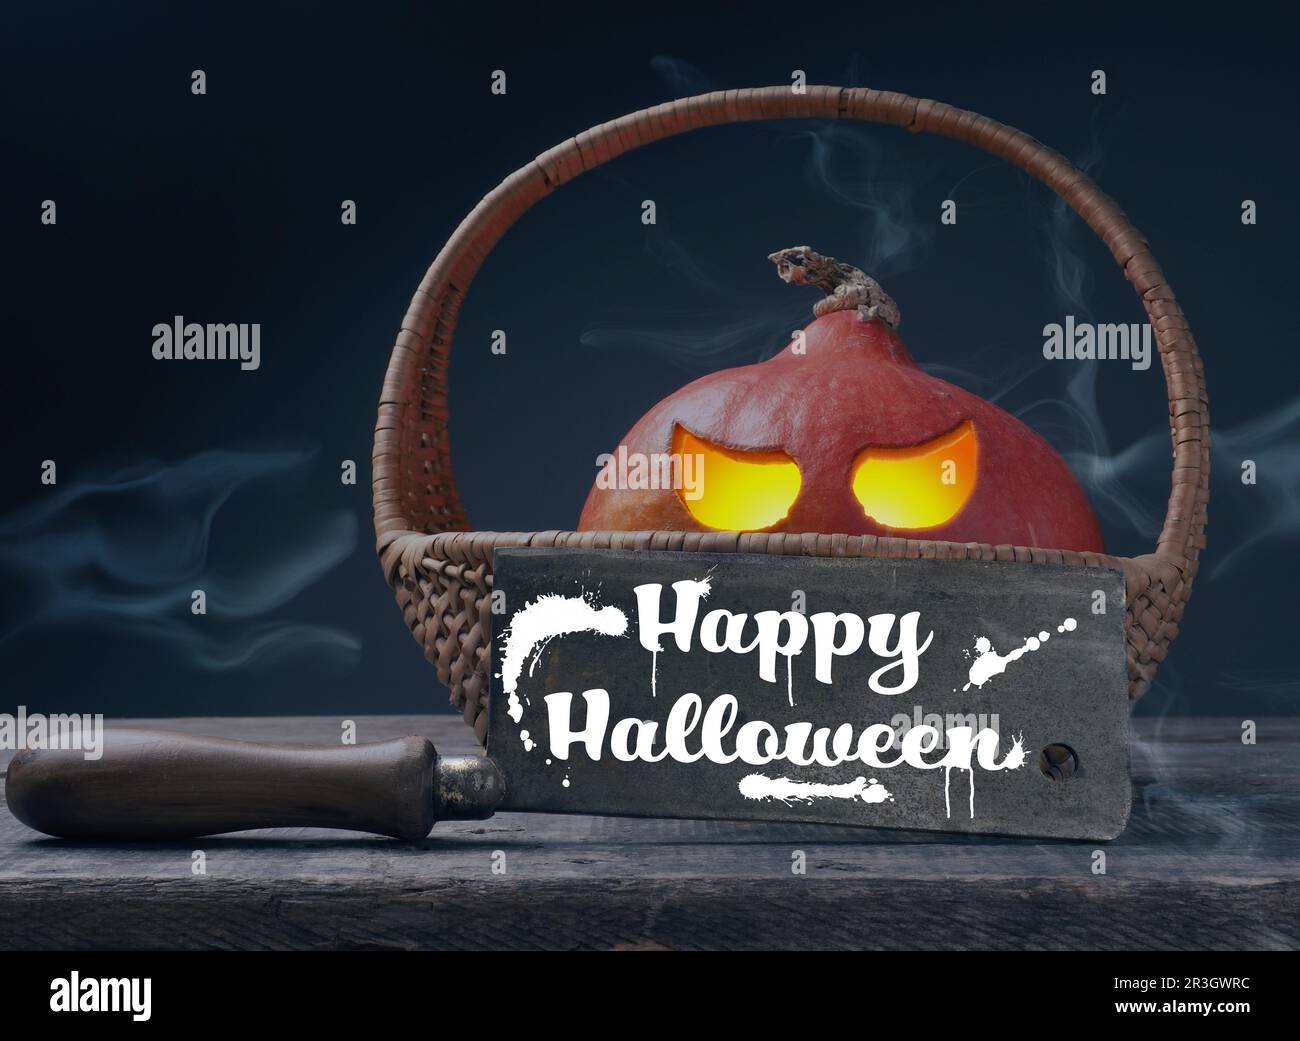 Zucca di Halloween scolpita Jack o lantner in un cesto su un tavolo di legno rustico con un taglio macellaio, spazio per il testo Foto Stock